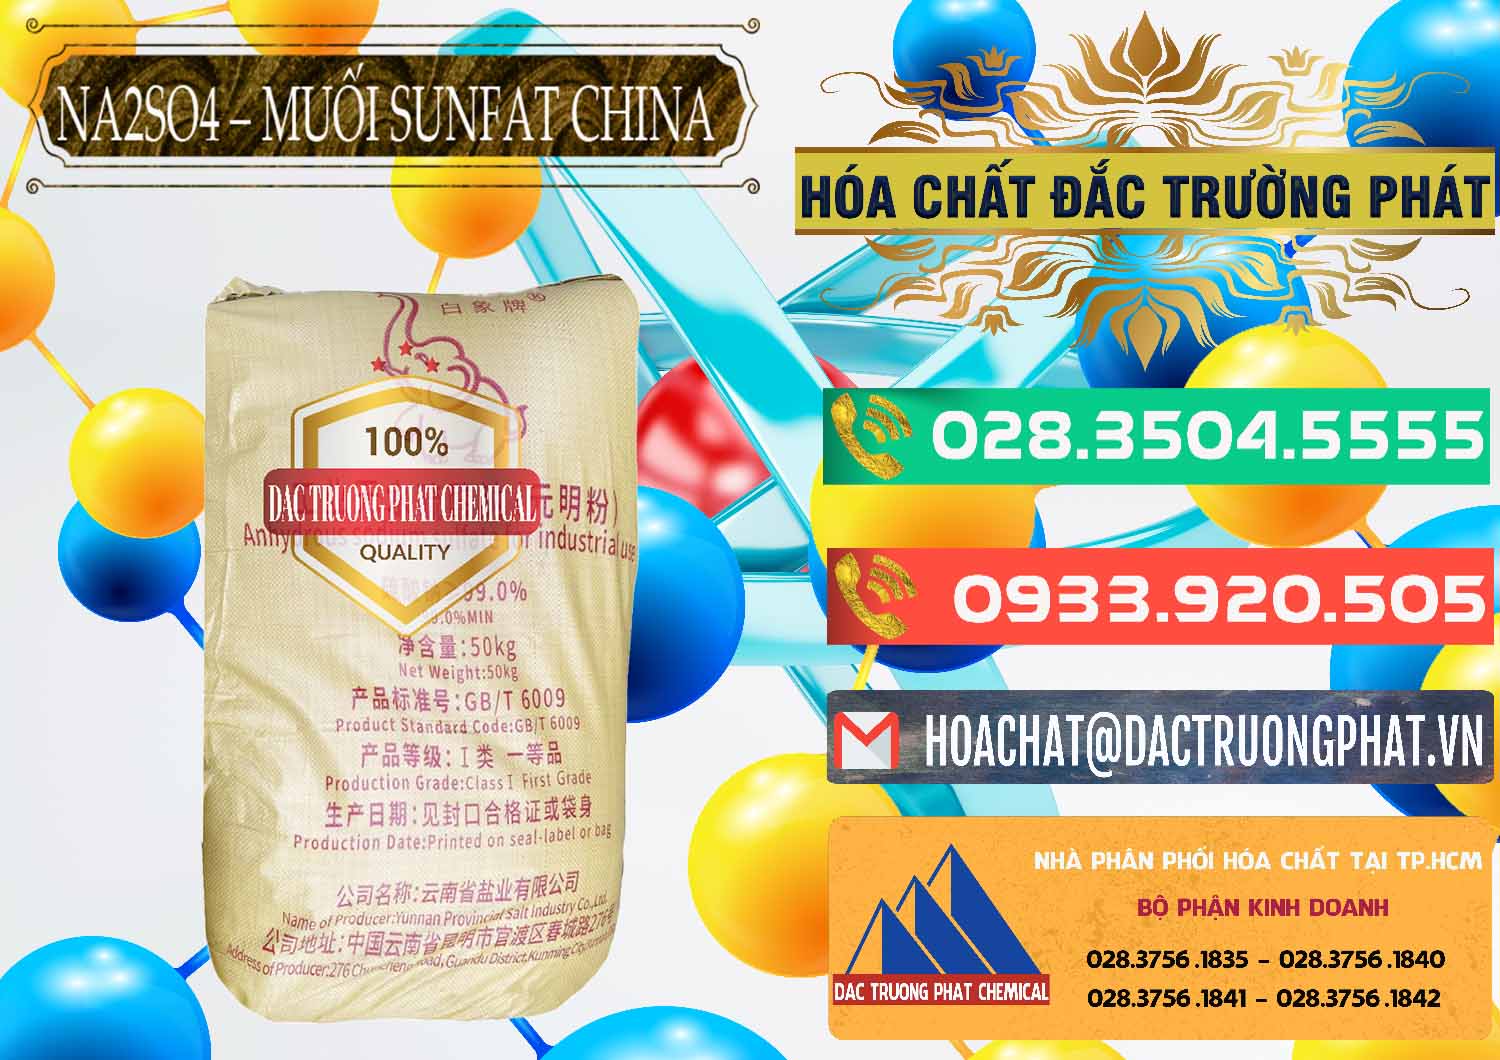 Đơn vị kinh doanh ( bán ) Sodium Sulphate - Muối Sunfat Na2SO4 Logo Con Voi Trung Quốc China - 0409 - Cty cung cấp ( nhập khẩu ) hóa chất tại TP.HCM - congtyhoachat.com.vn